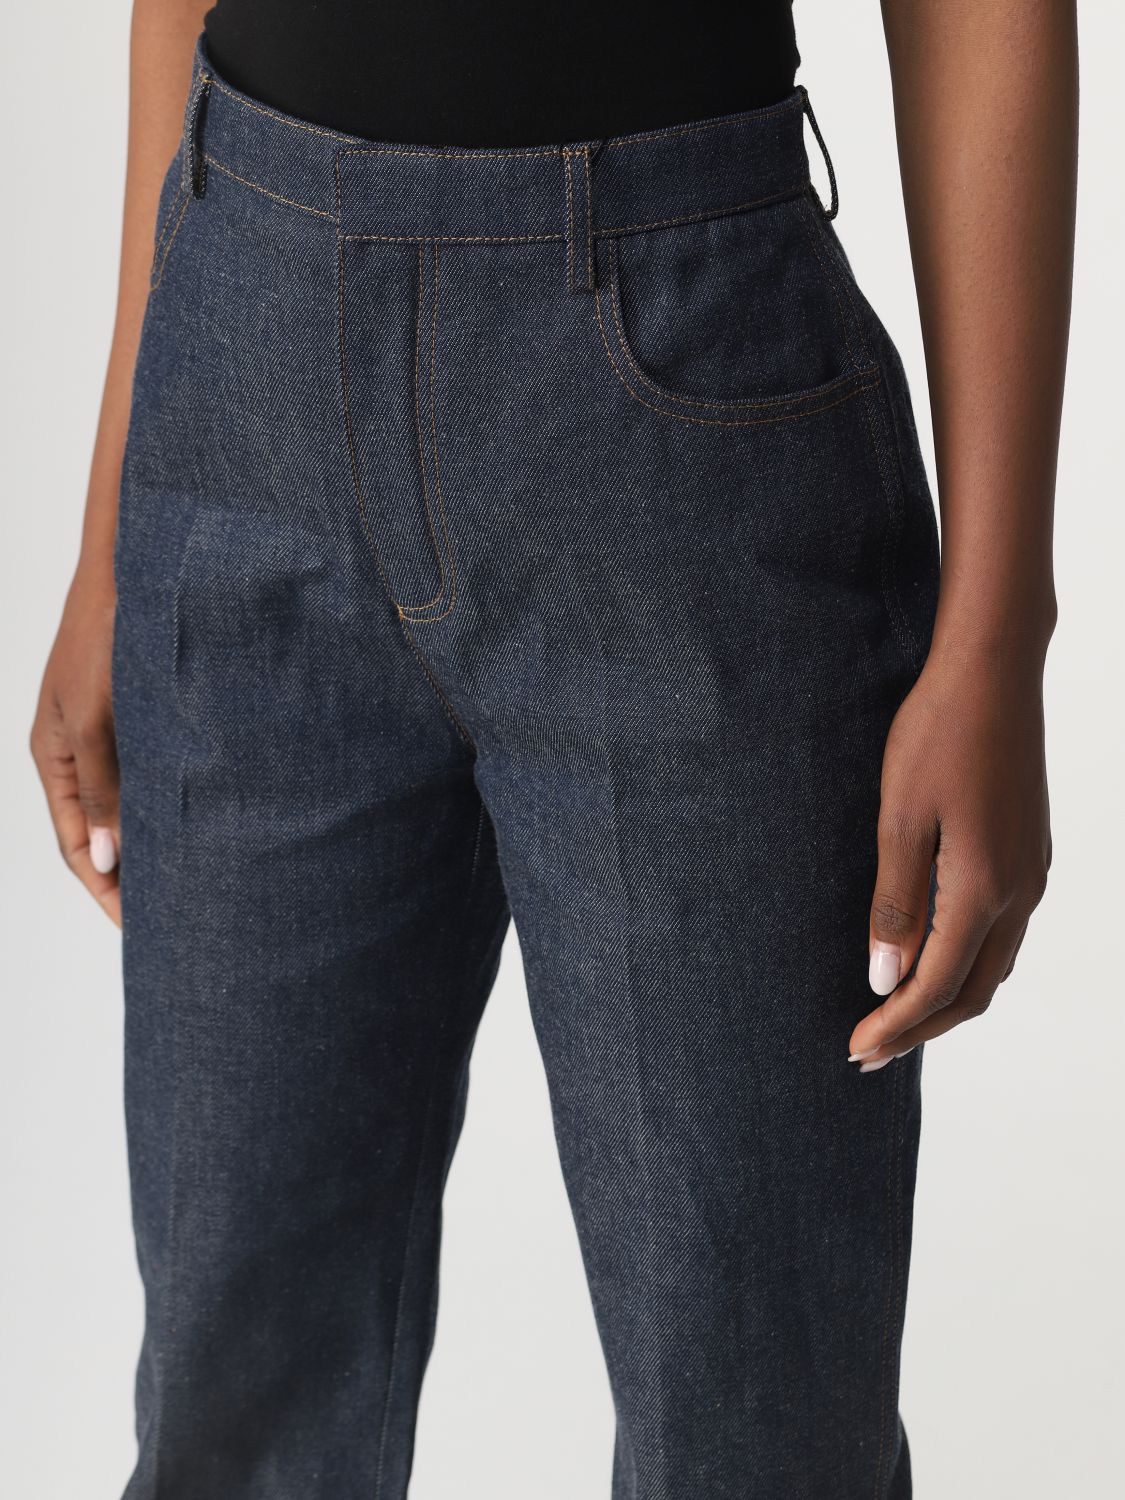 Jeans Saint Laurent: Saint Laurent cotton denim jeans denim 5